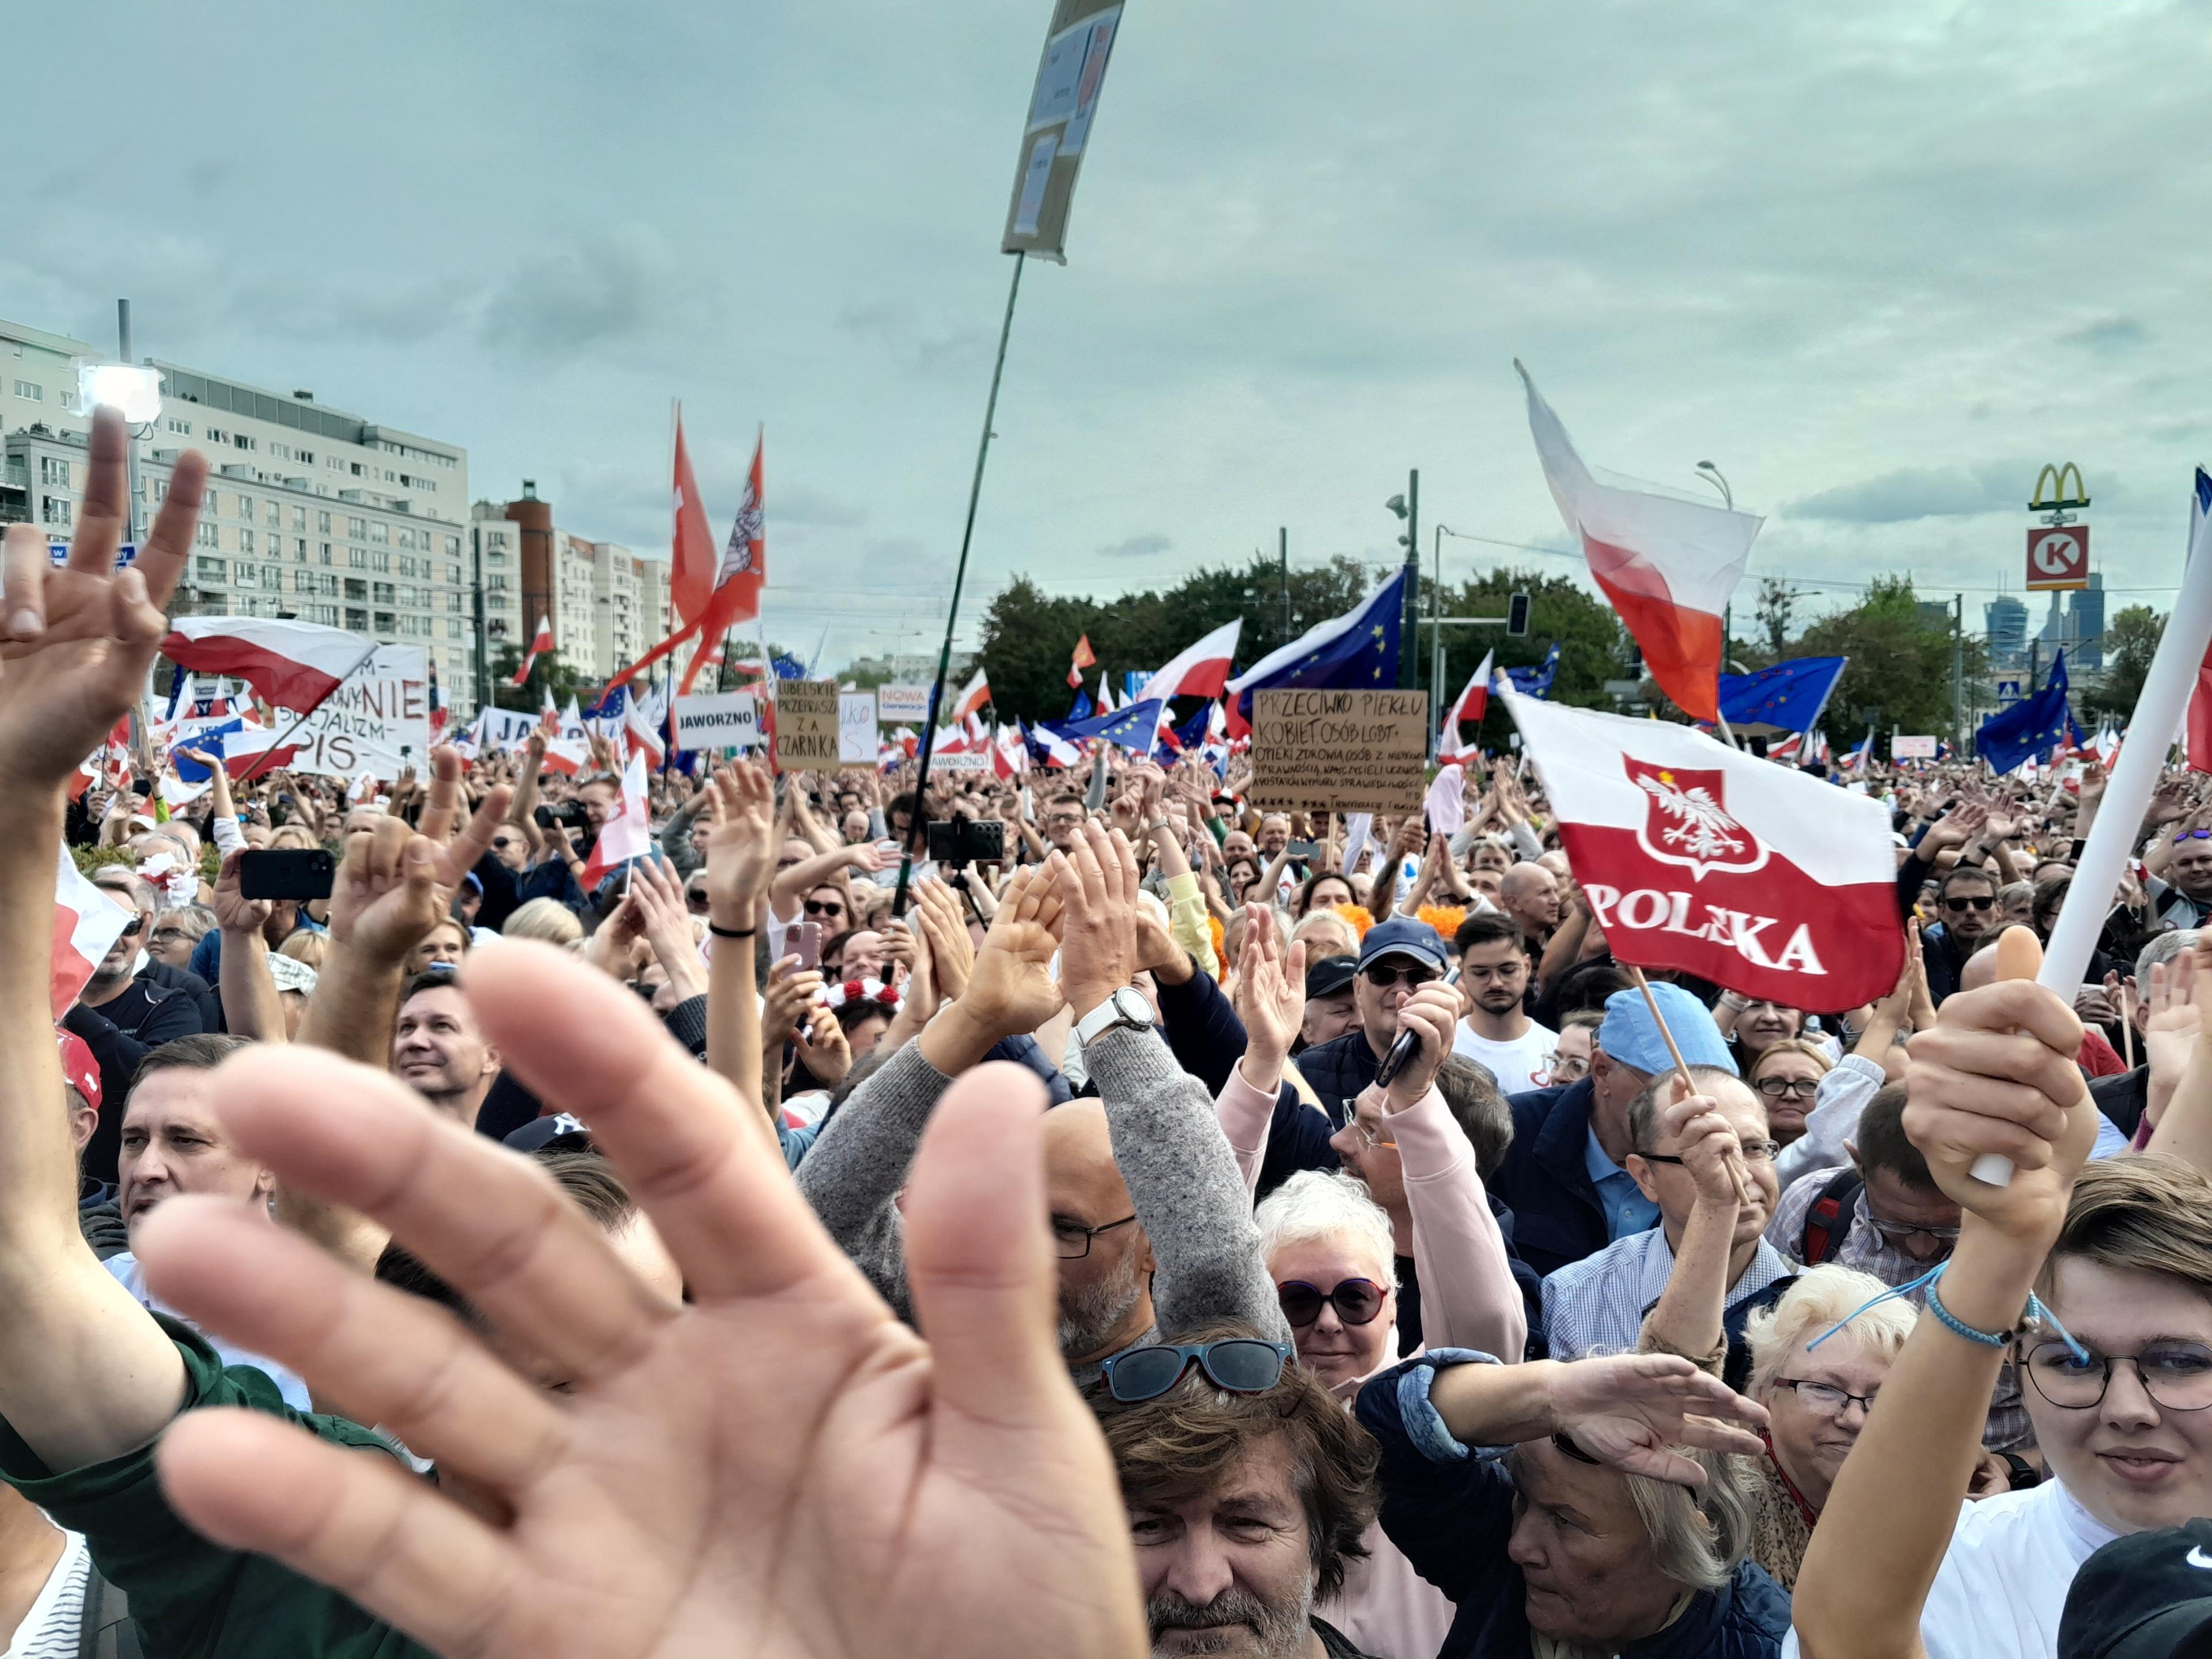 Tłumy na Marszu Miliona Serc pod sceną klaszczą w dłonie